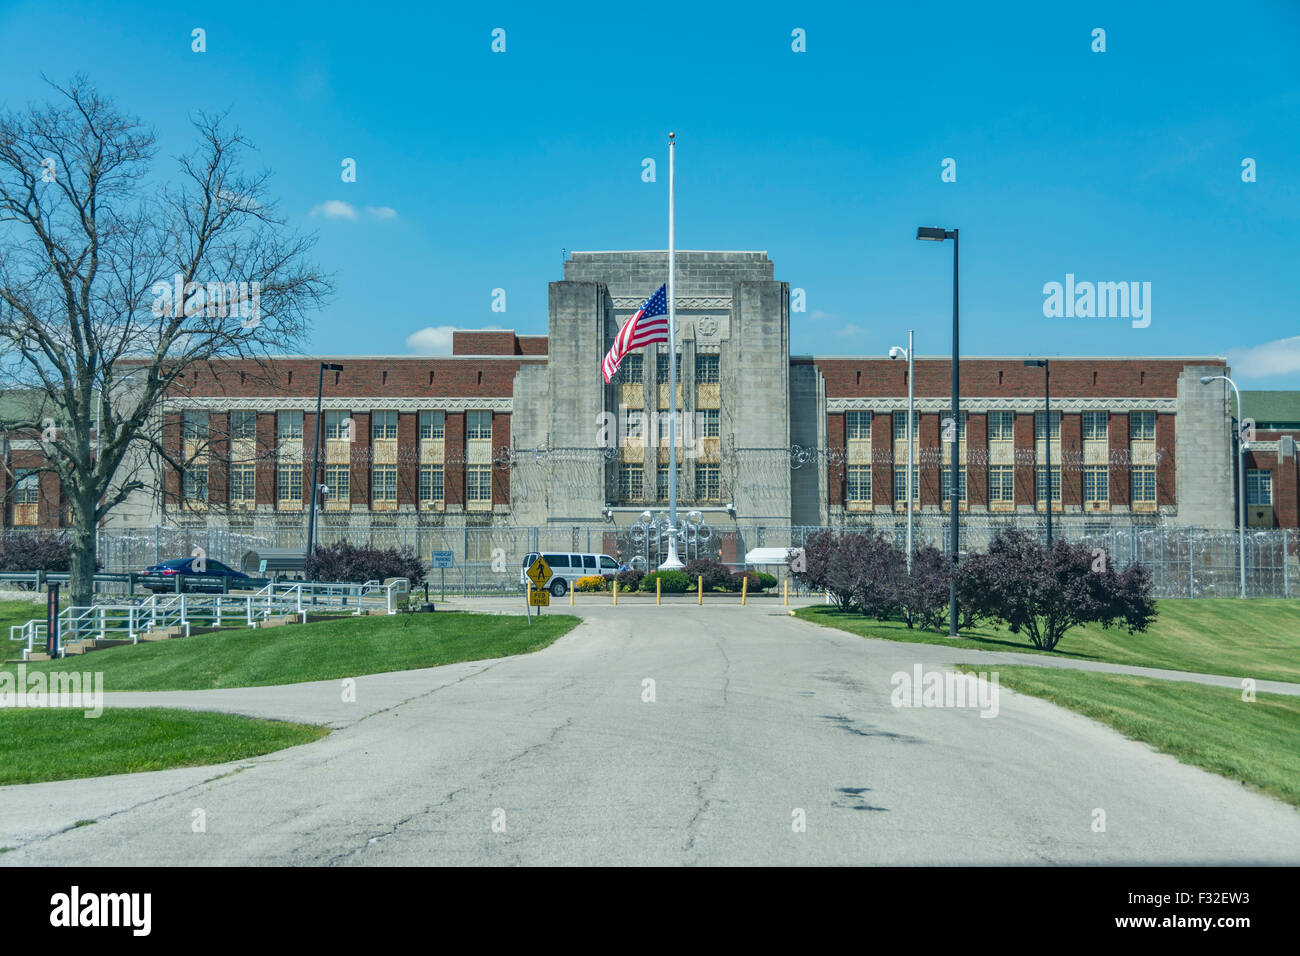 Federal Prison Medical Center in Lexington Kentucky USA. Stock Photo